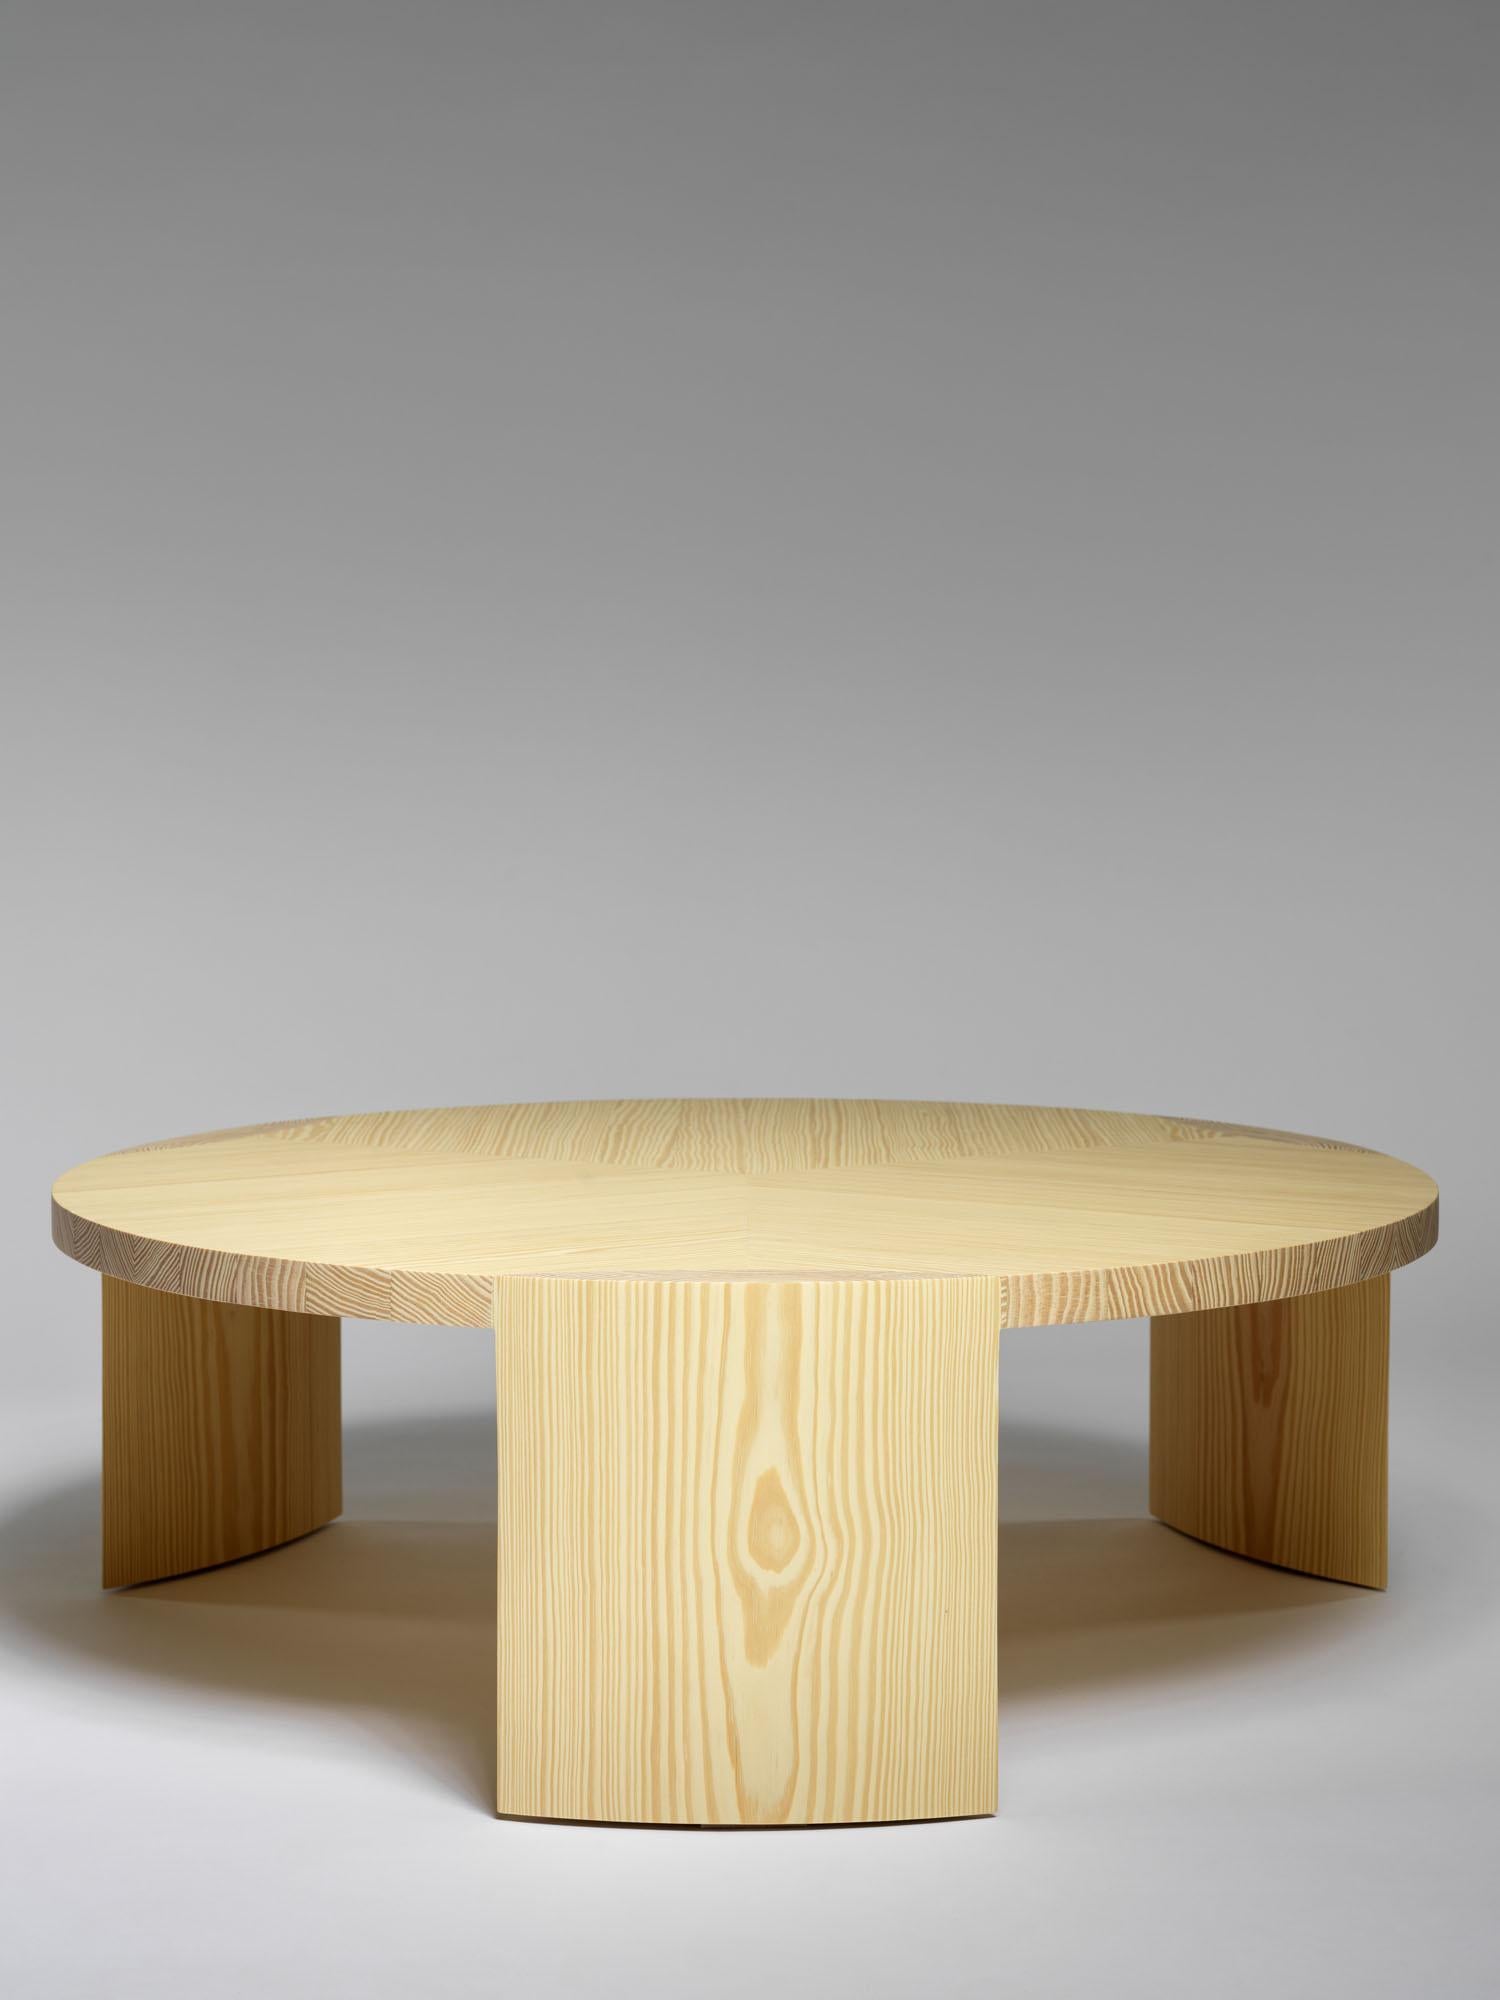 Table basse Nort de Tim Vranken
MATERIAL : Pin jaune
Dimensions : D 90 x H 30 cm

Tim Vranken est un designer de meubles belge qui se concentre sur les meubles solides et faits à la main. Dans ses créations, l'utilisation de matériaux purs et de